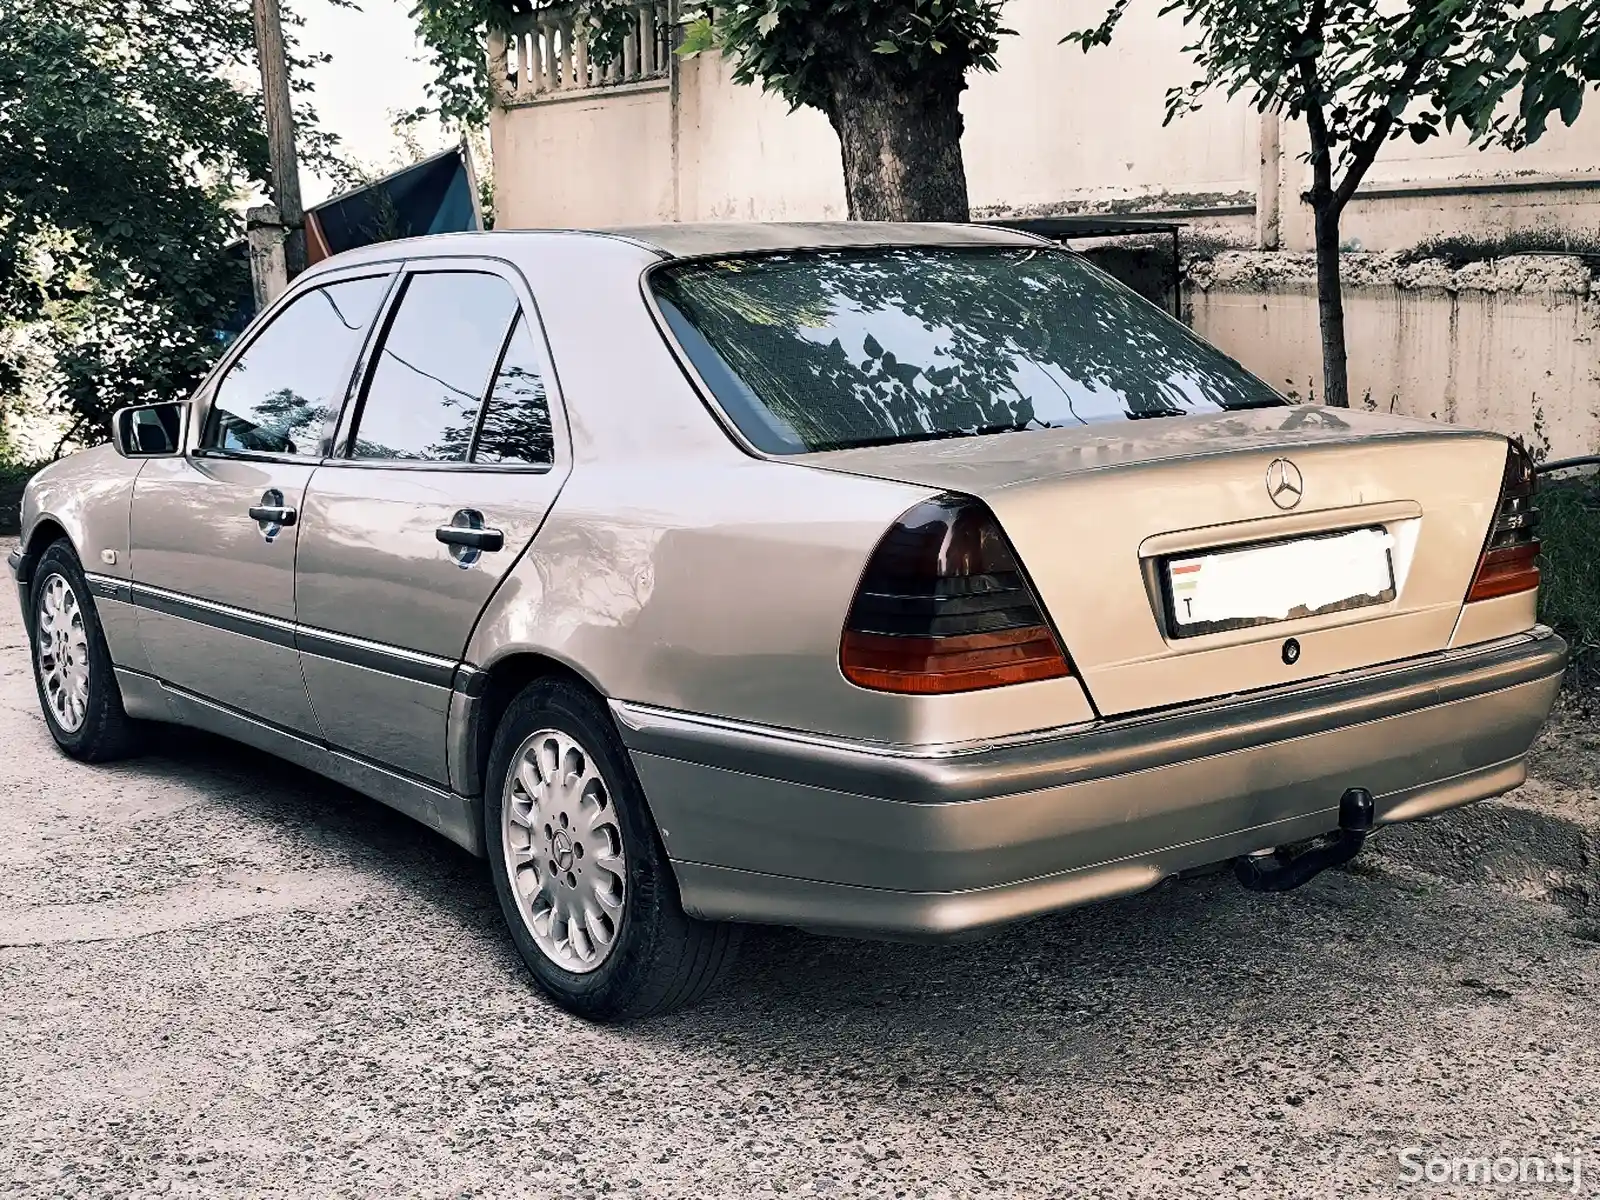 Mercedes-Benz C class, 1997-2